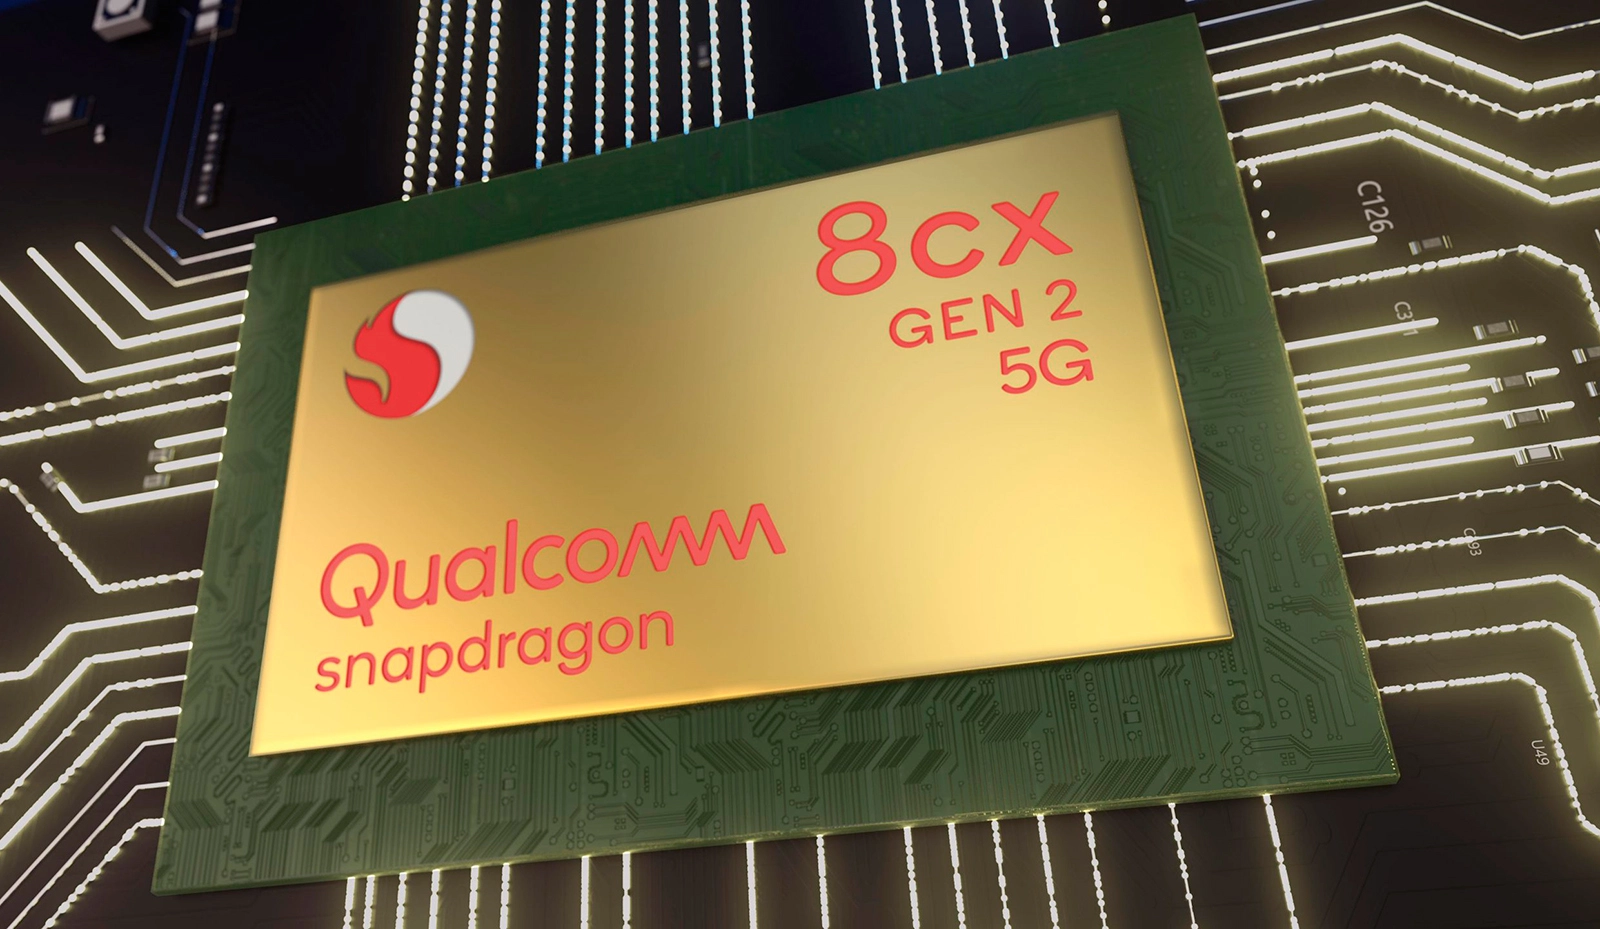 Оновлений флагманський процесор Snapdragon 8 Gen 2 отримає оригінальну архітектуру ядер